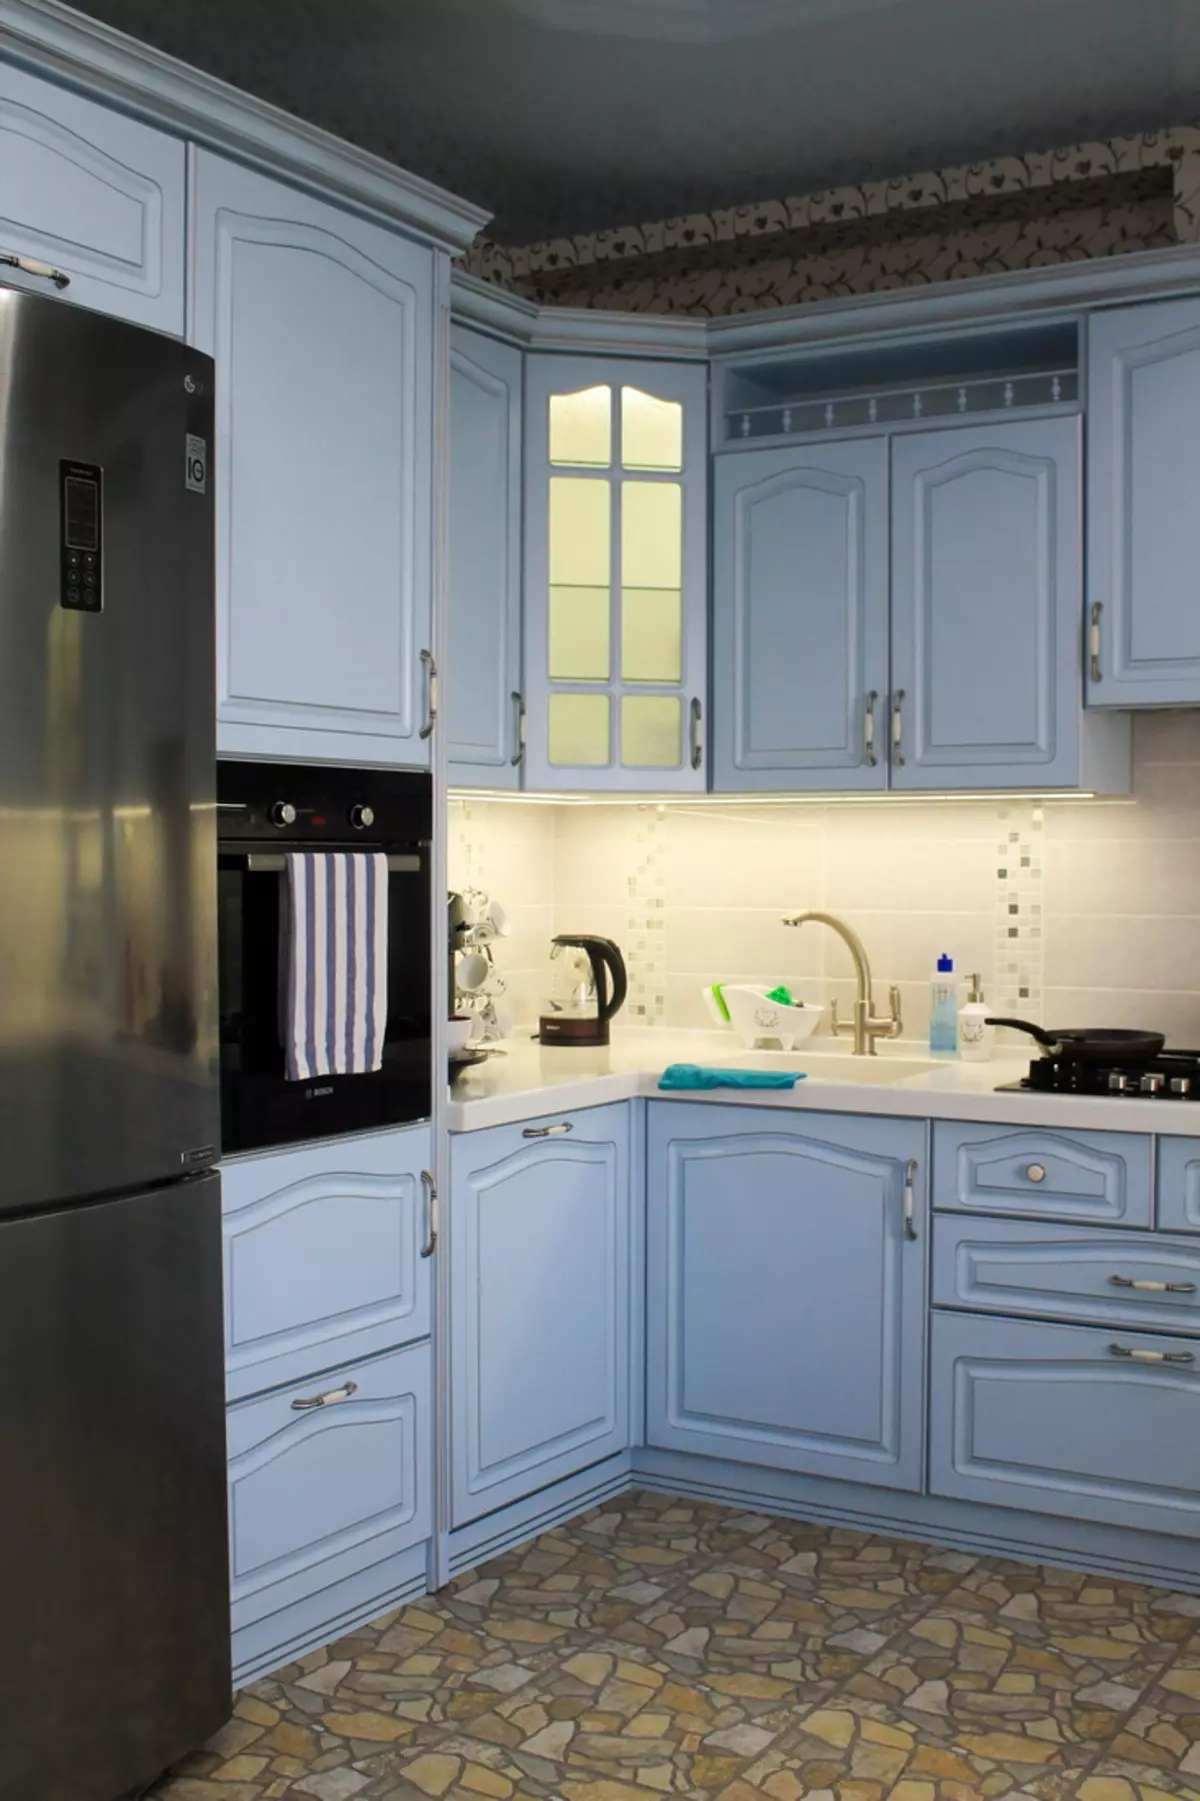 Bucătărie albastră (82 fotografii): Ce culori sunt combinate în interiorul unui set de bucătărie albastră? Design de bucătărie în tonuri albastre ușoare și întunecate 9555_29